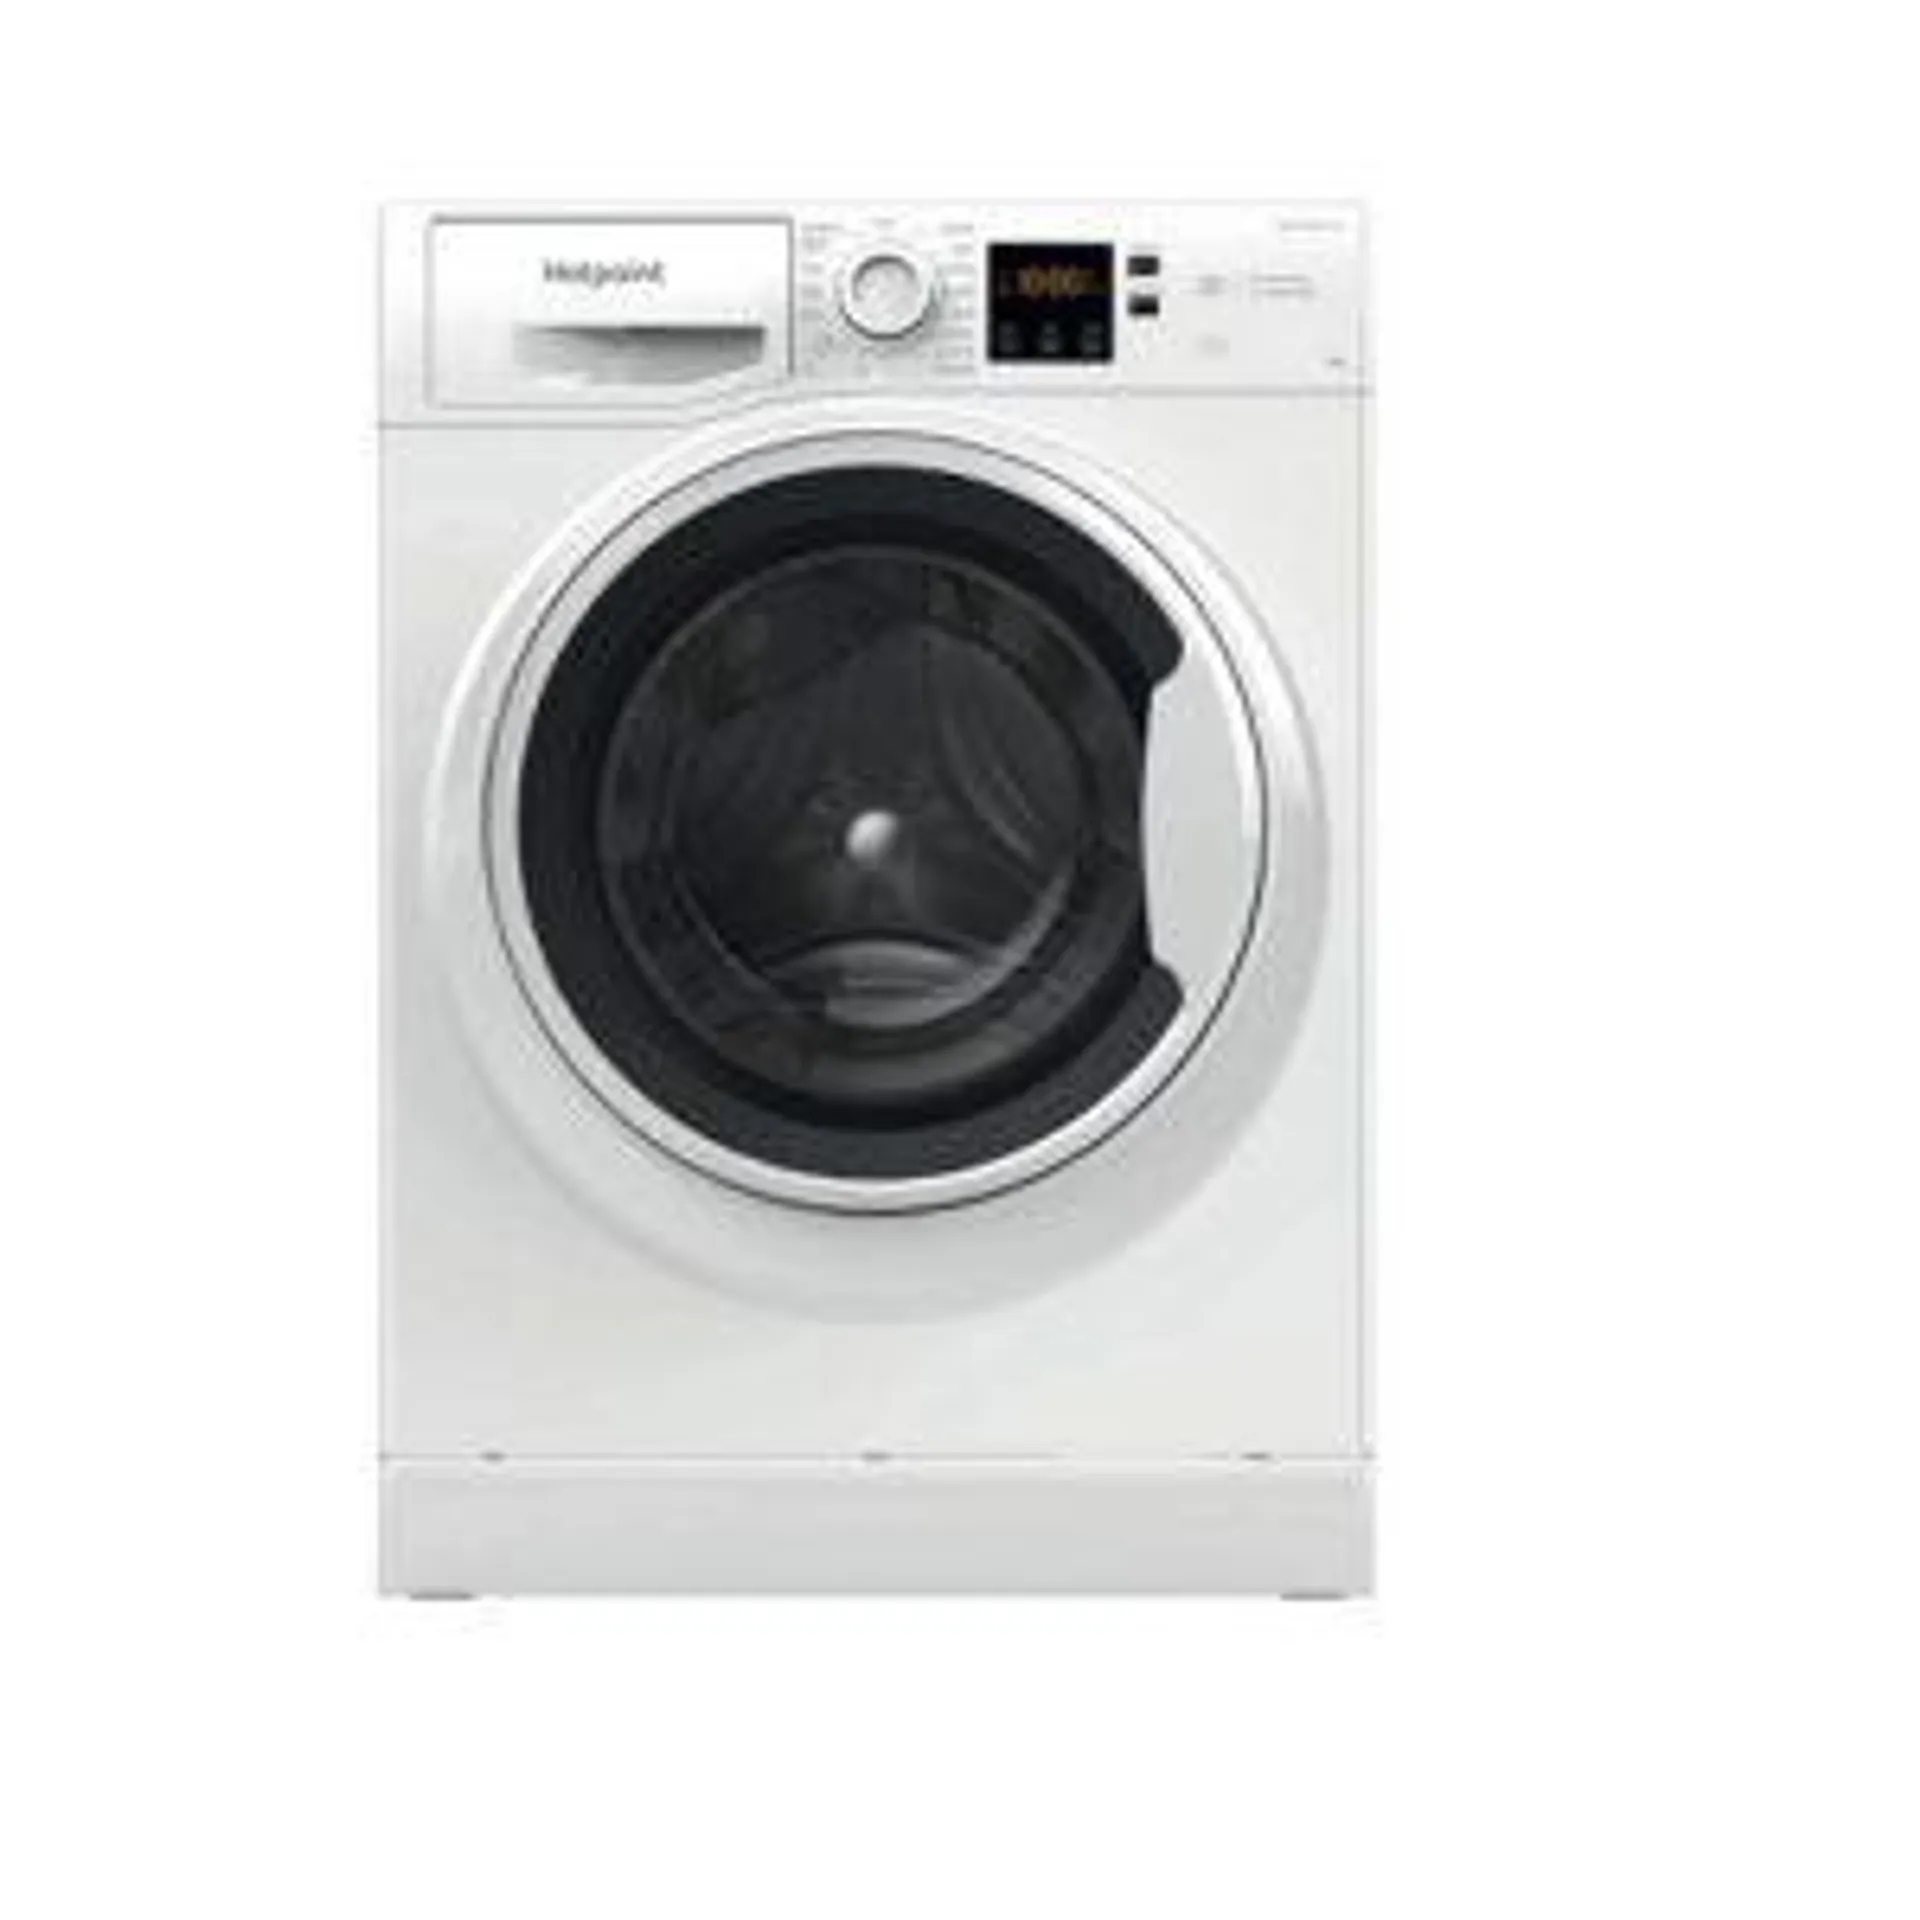 Hotpoint 9kg 1400rpm Washing Machine